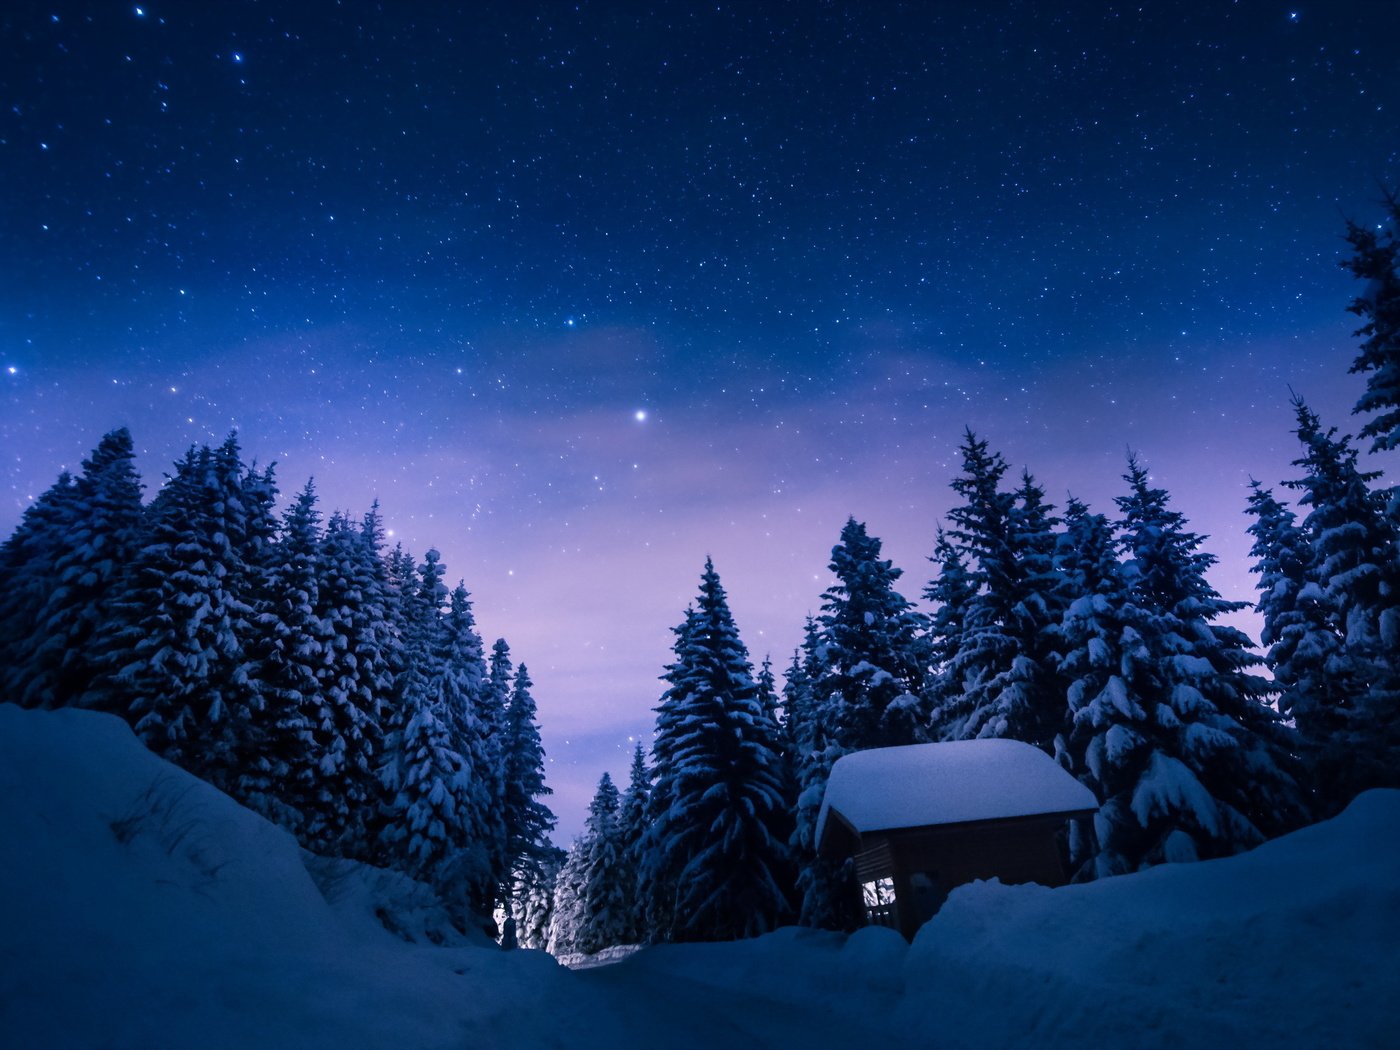 спокойной ночи картинки дизайнерские зимние красивые